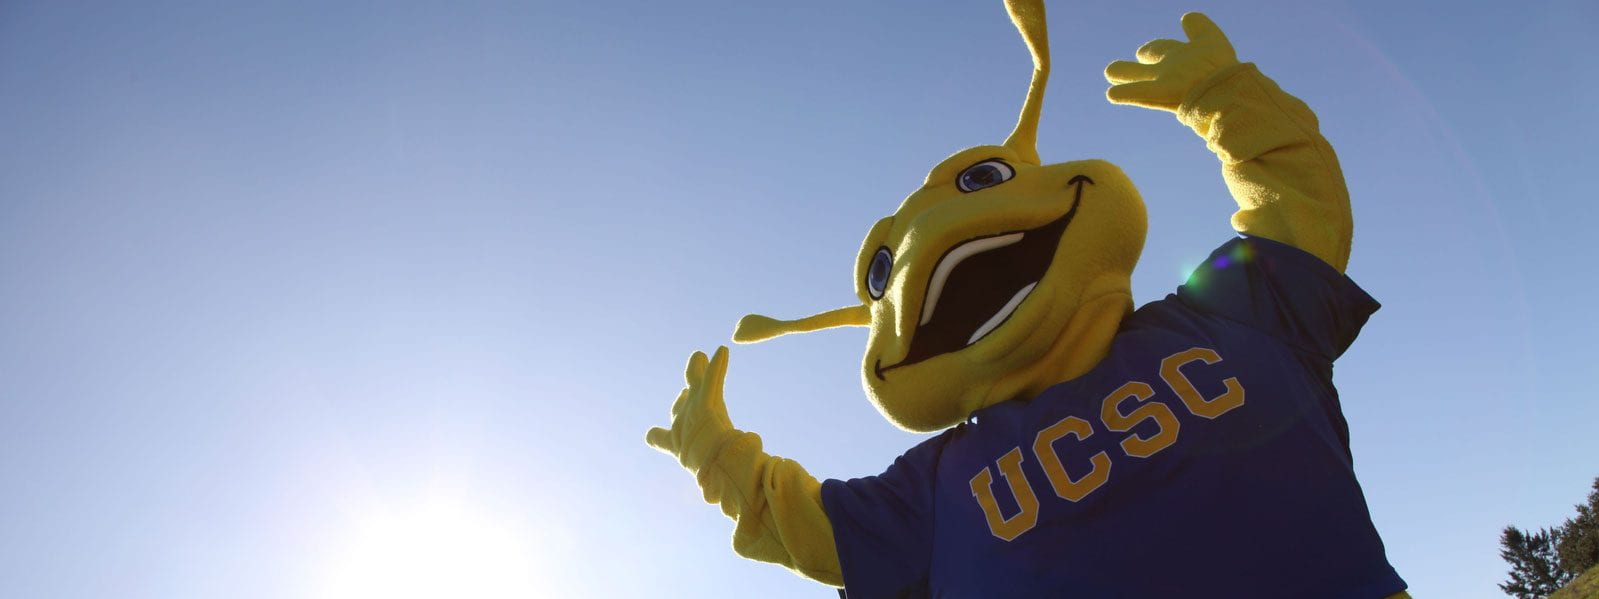 Sammy the Slug - UCSC Mascot